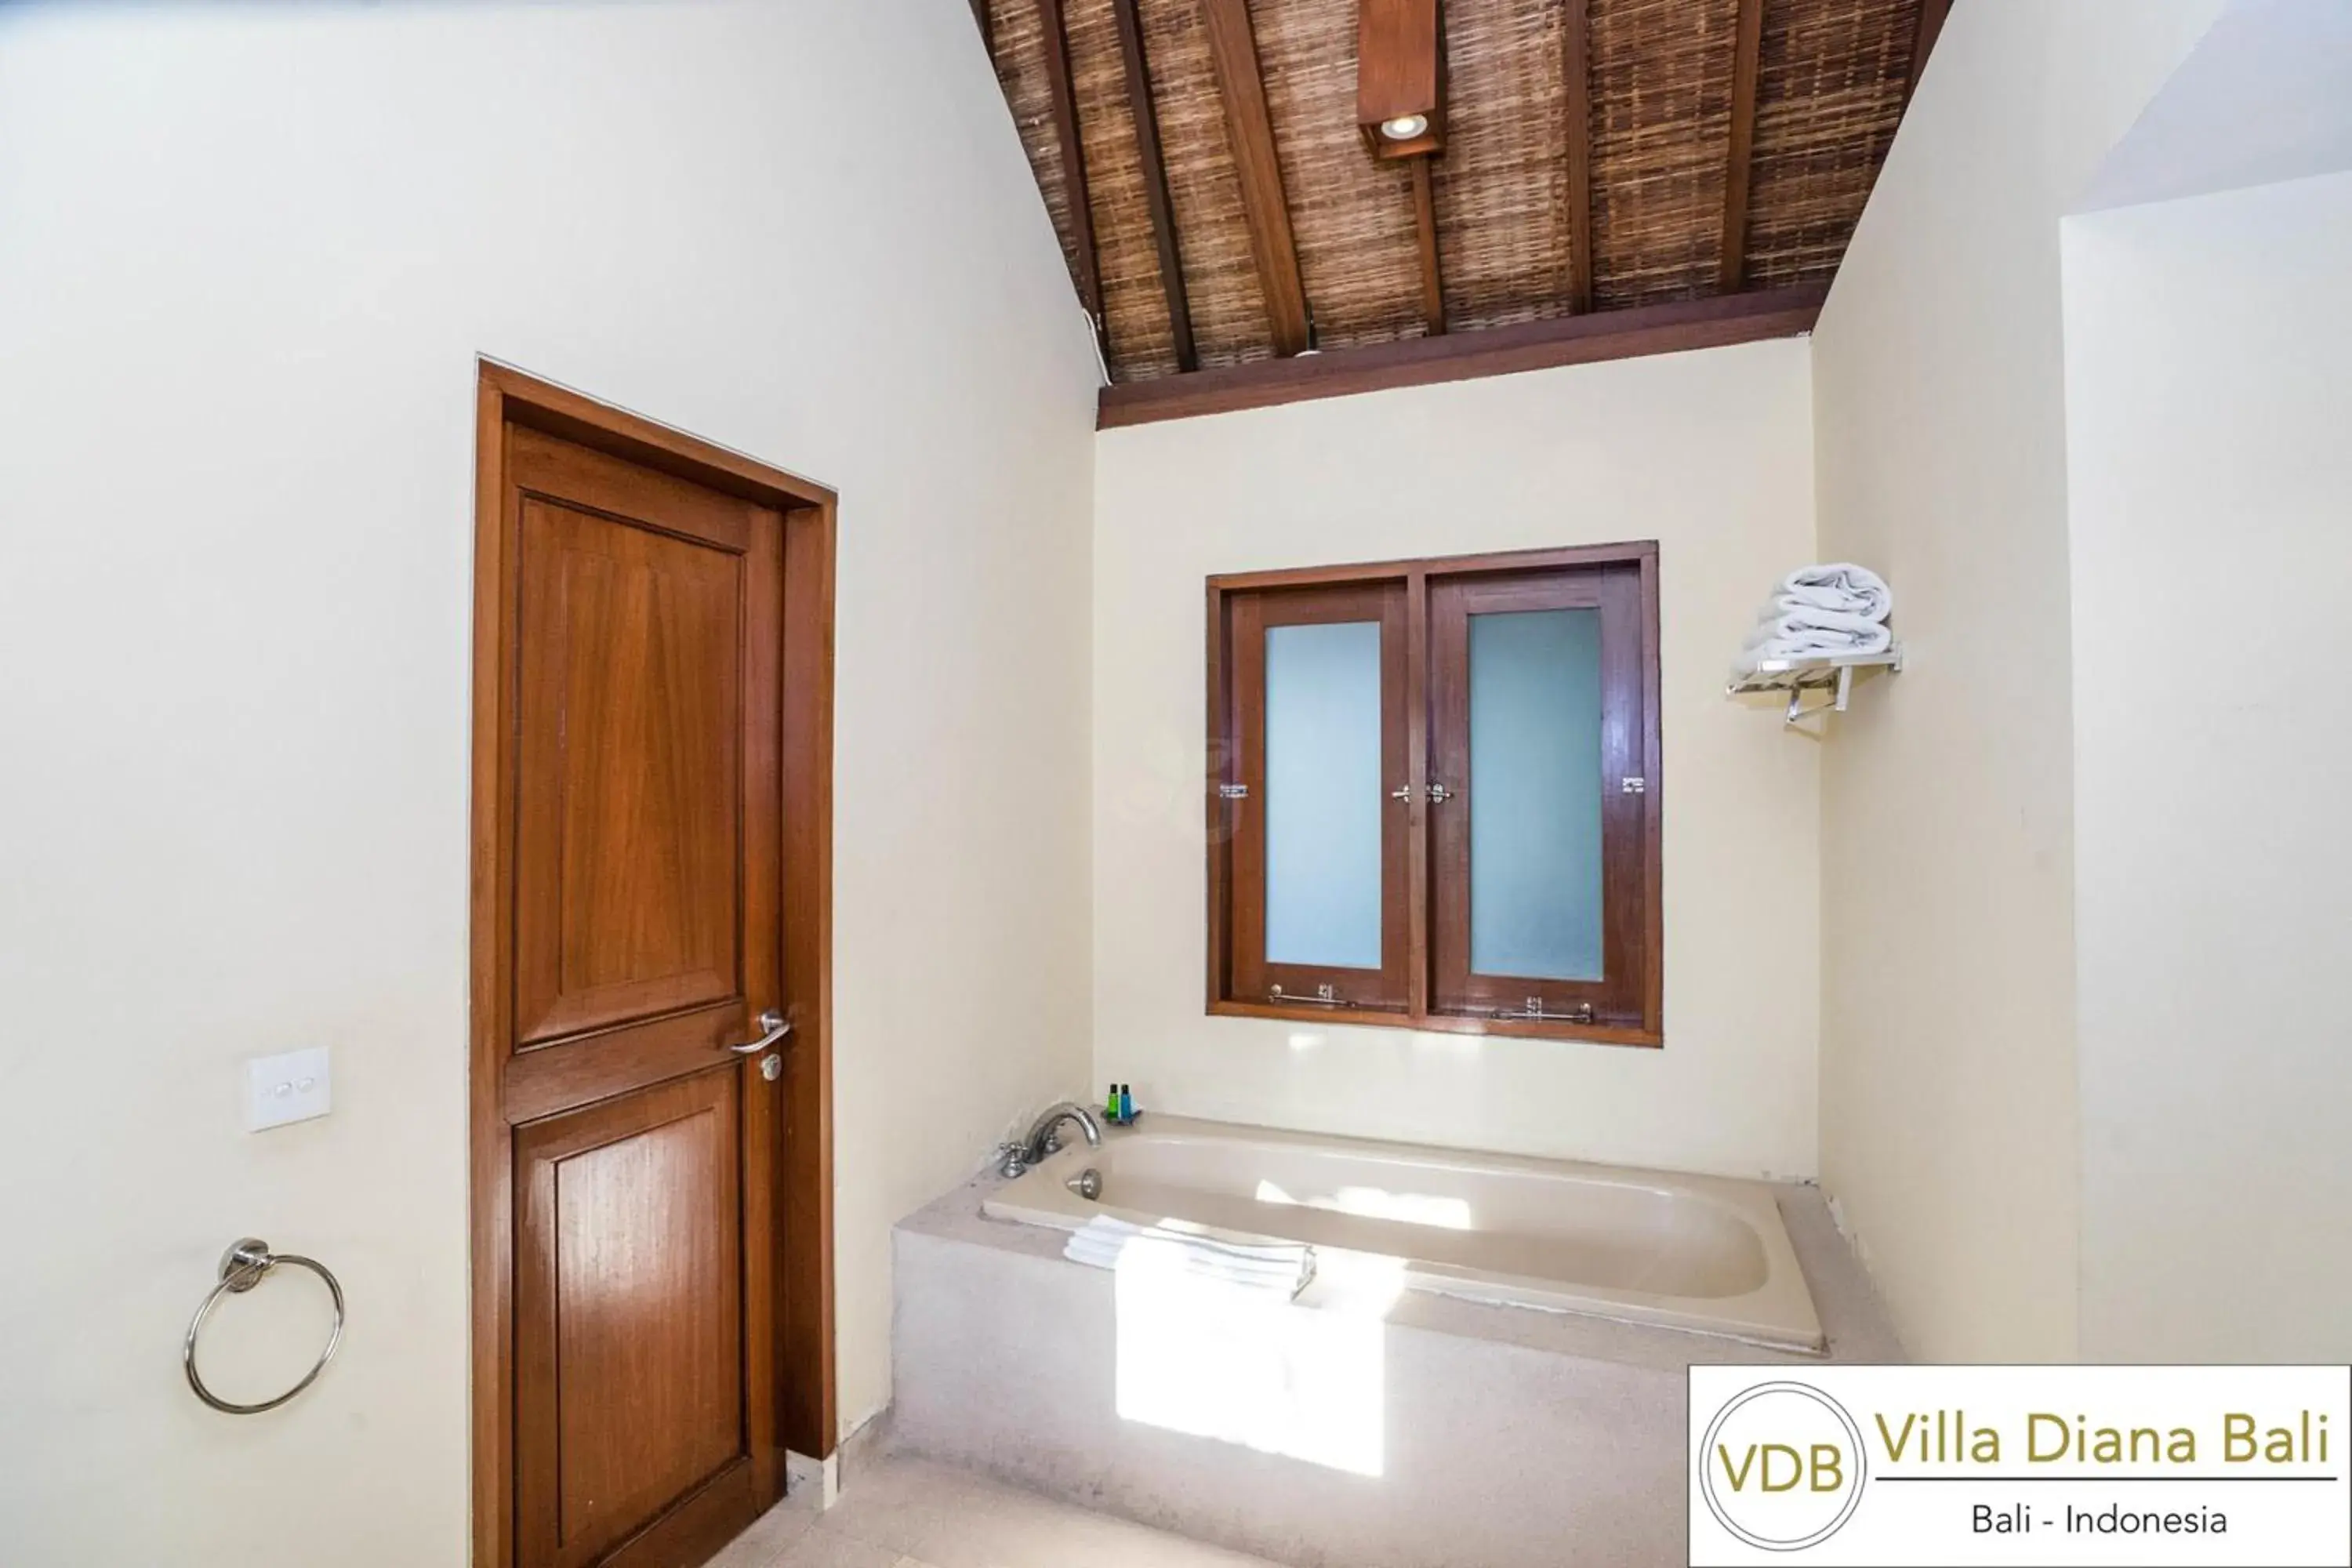 Bathroom in Villa Diana Bali